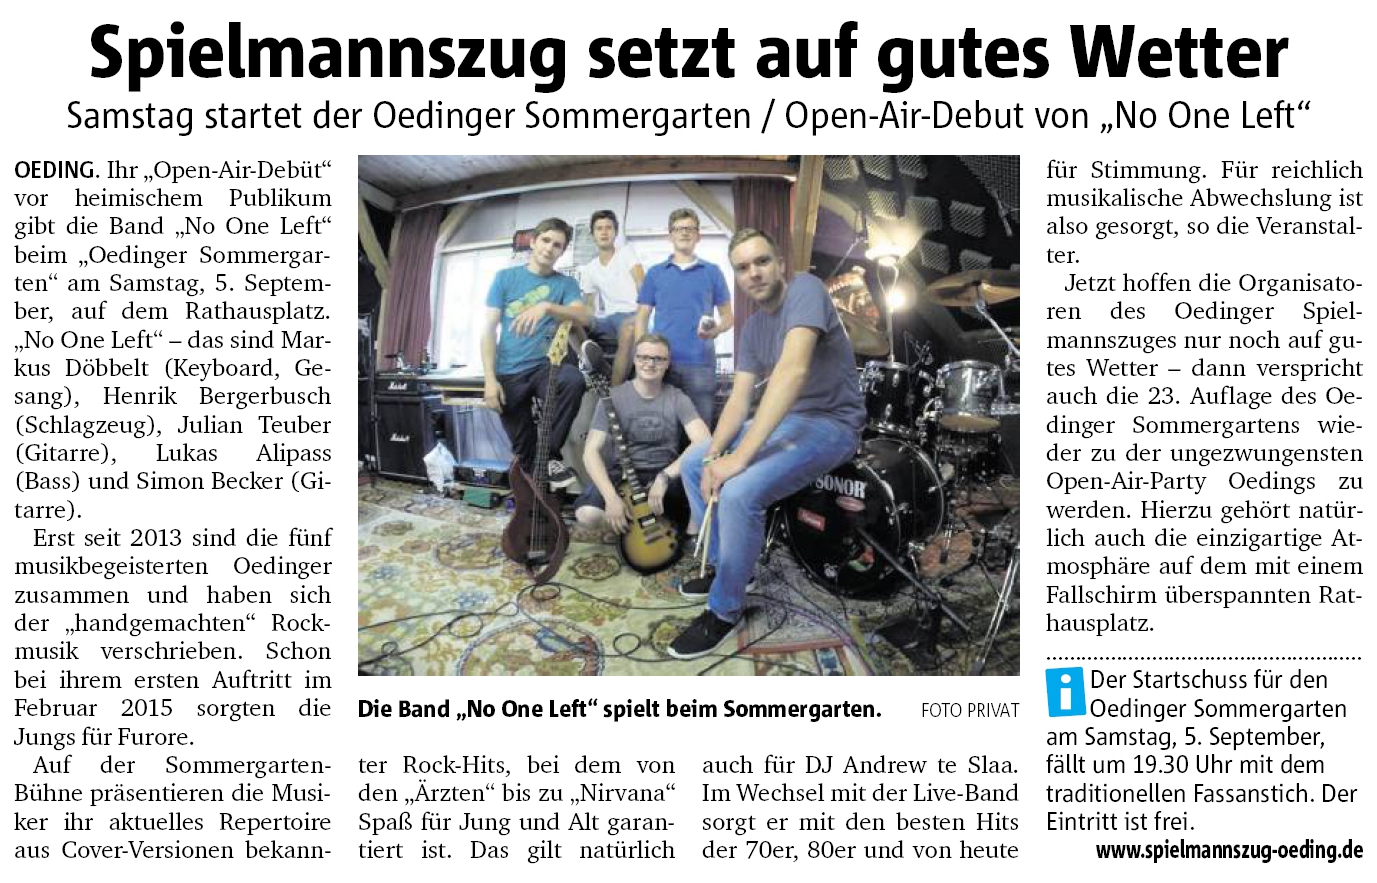 Spielmannszug setzt auf gutes Wetter | Münsterland Zeitung 02.09.2015 | Lokales Südlohn